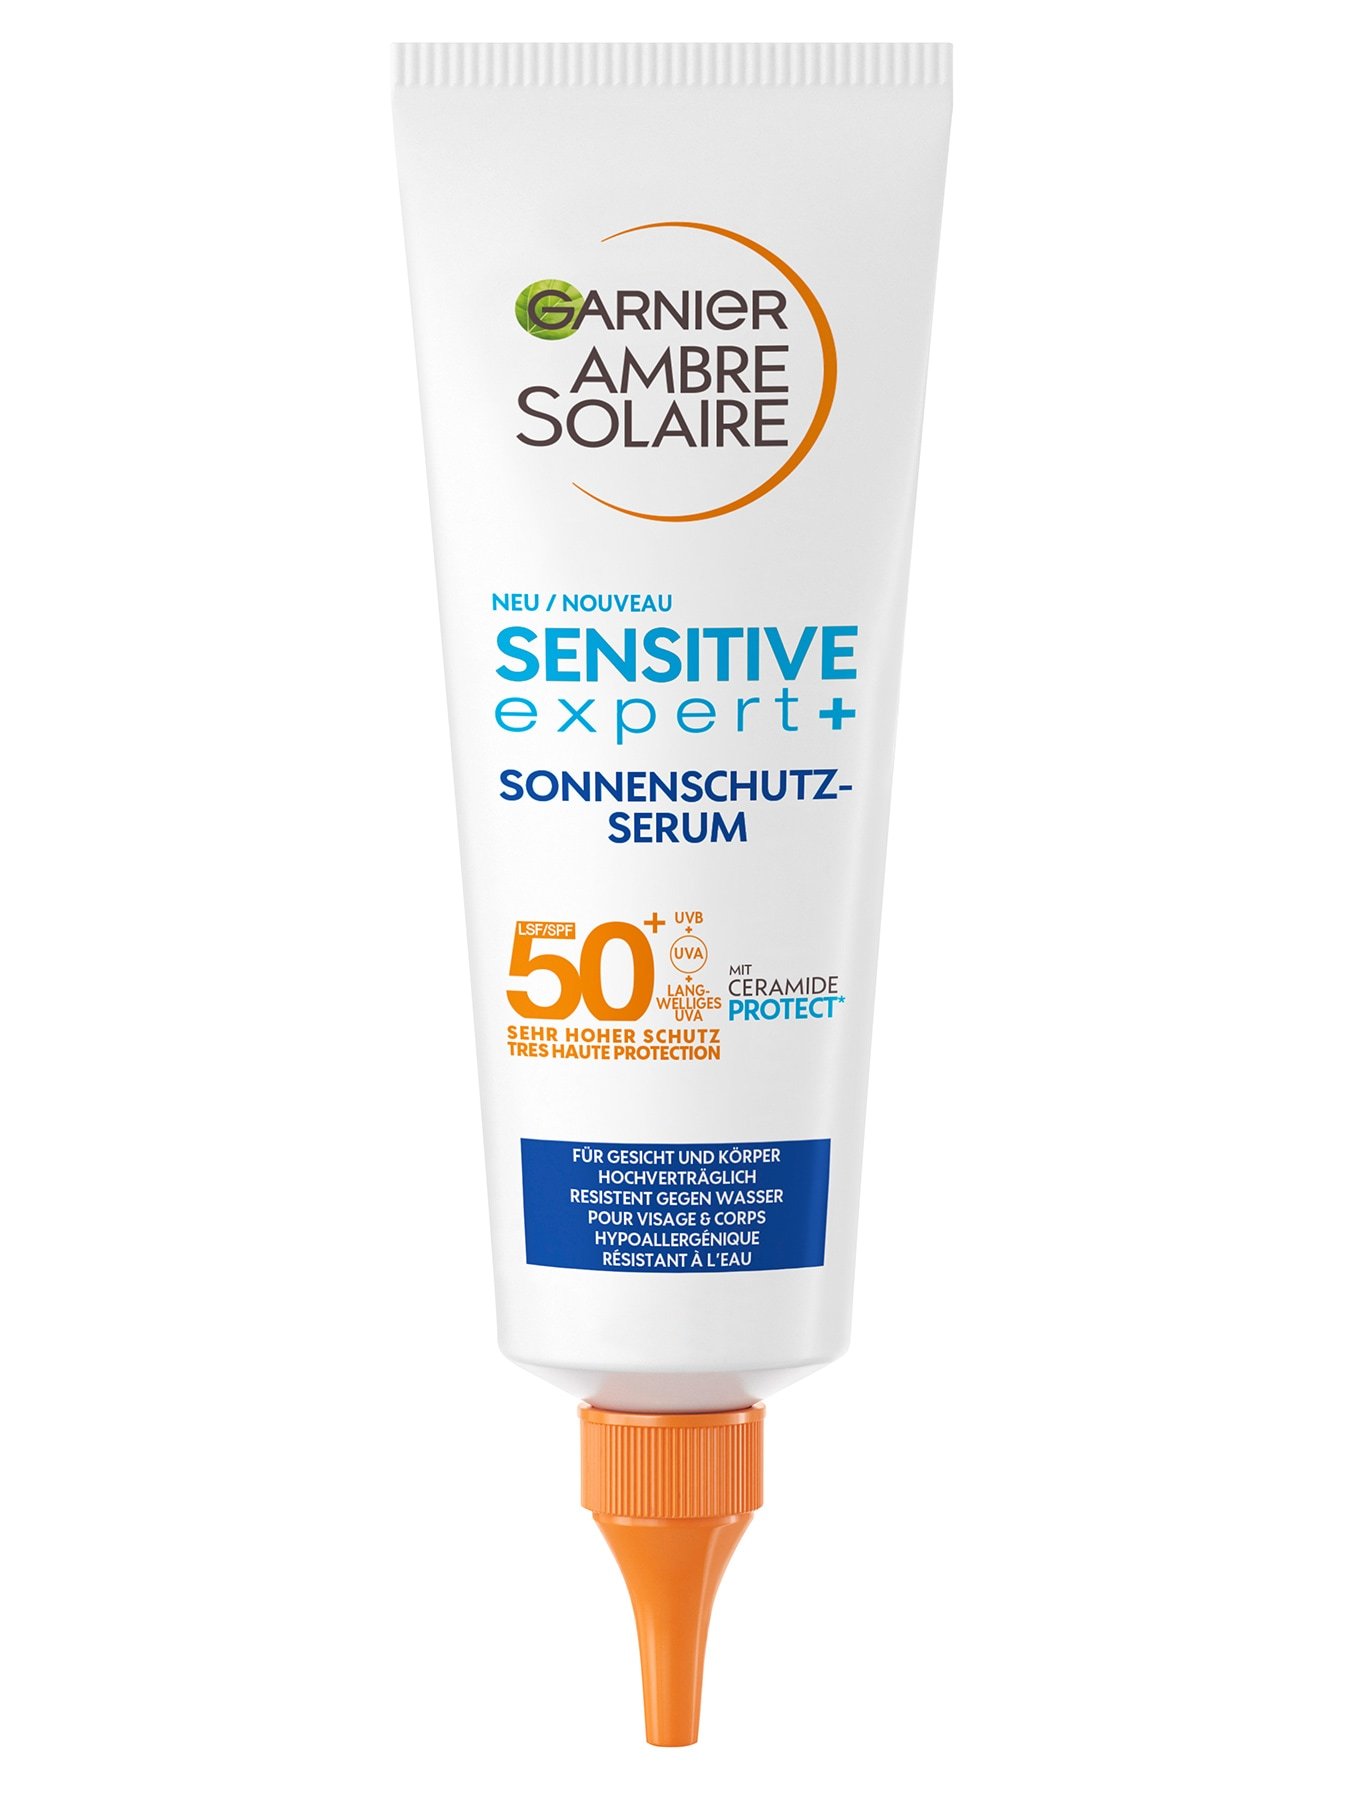 Ambre Solaire Sensitive Expert+ Sonnenschutz-Serum LSF 50+ - Produktabbildung